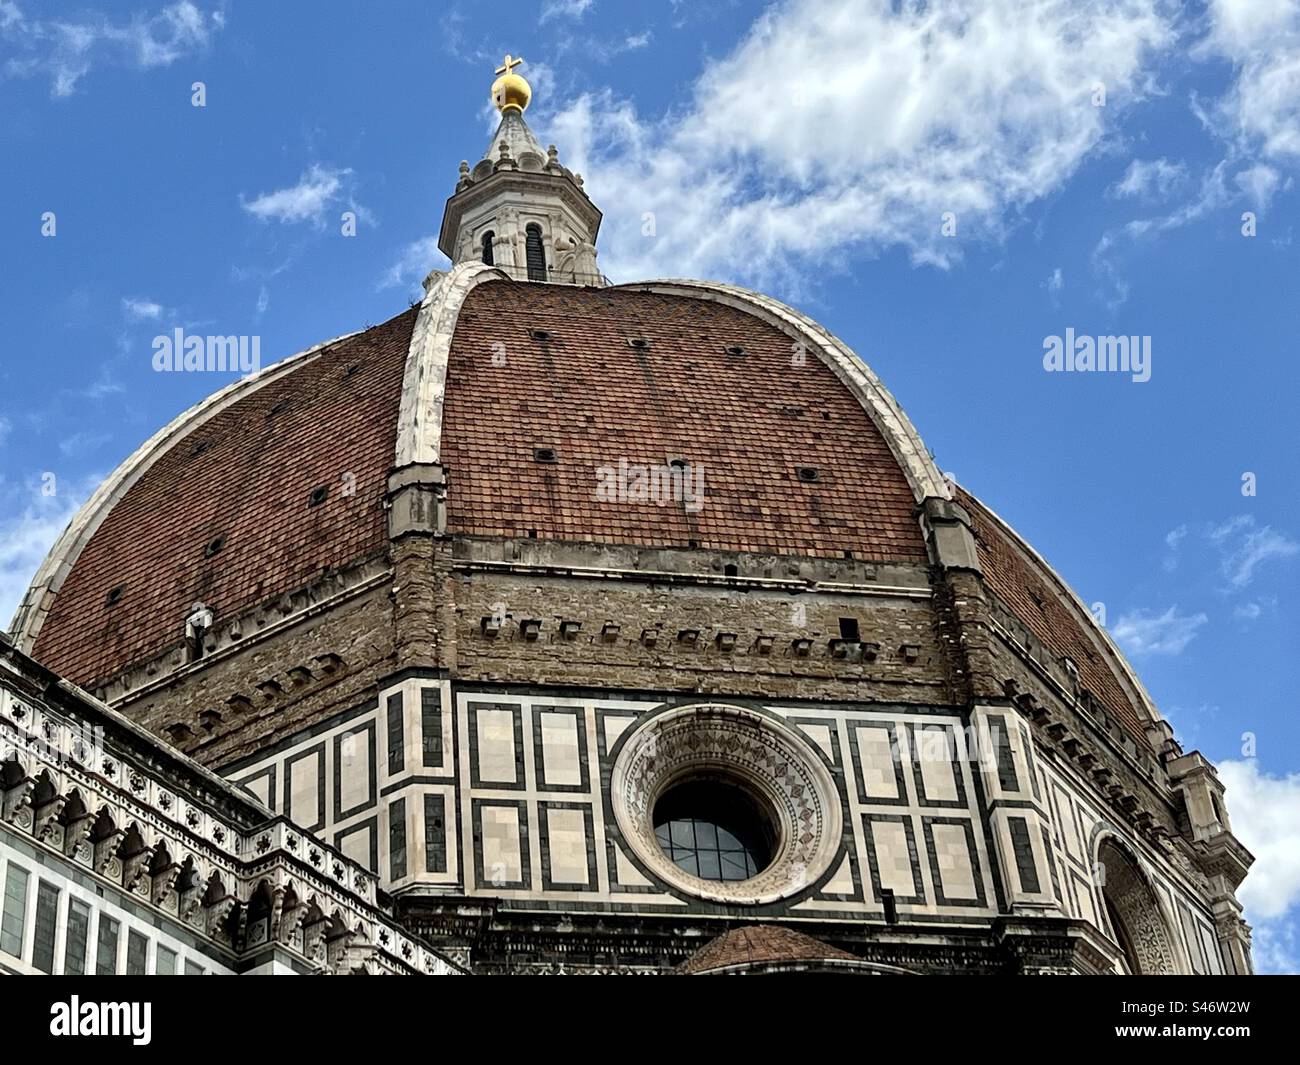 Le dôme de la cathédrale Santa Maria del Fiore à Florence est la plus grande voûte en maçonnerie du monde. Banque D'Images